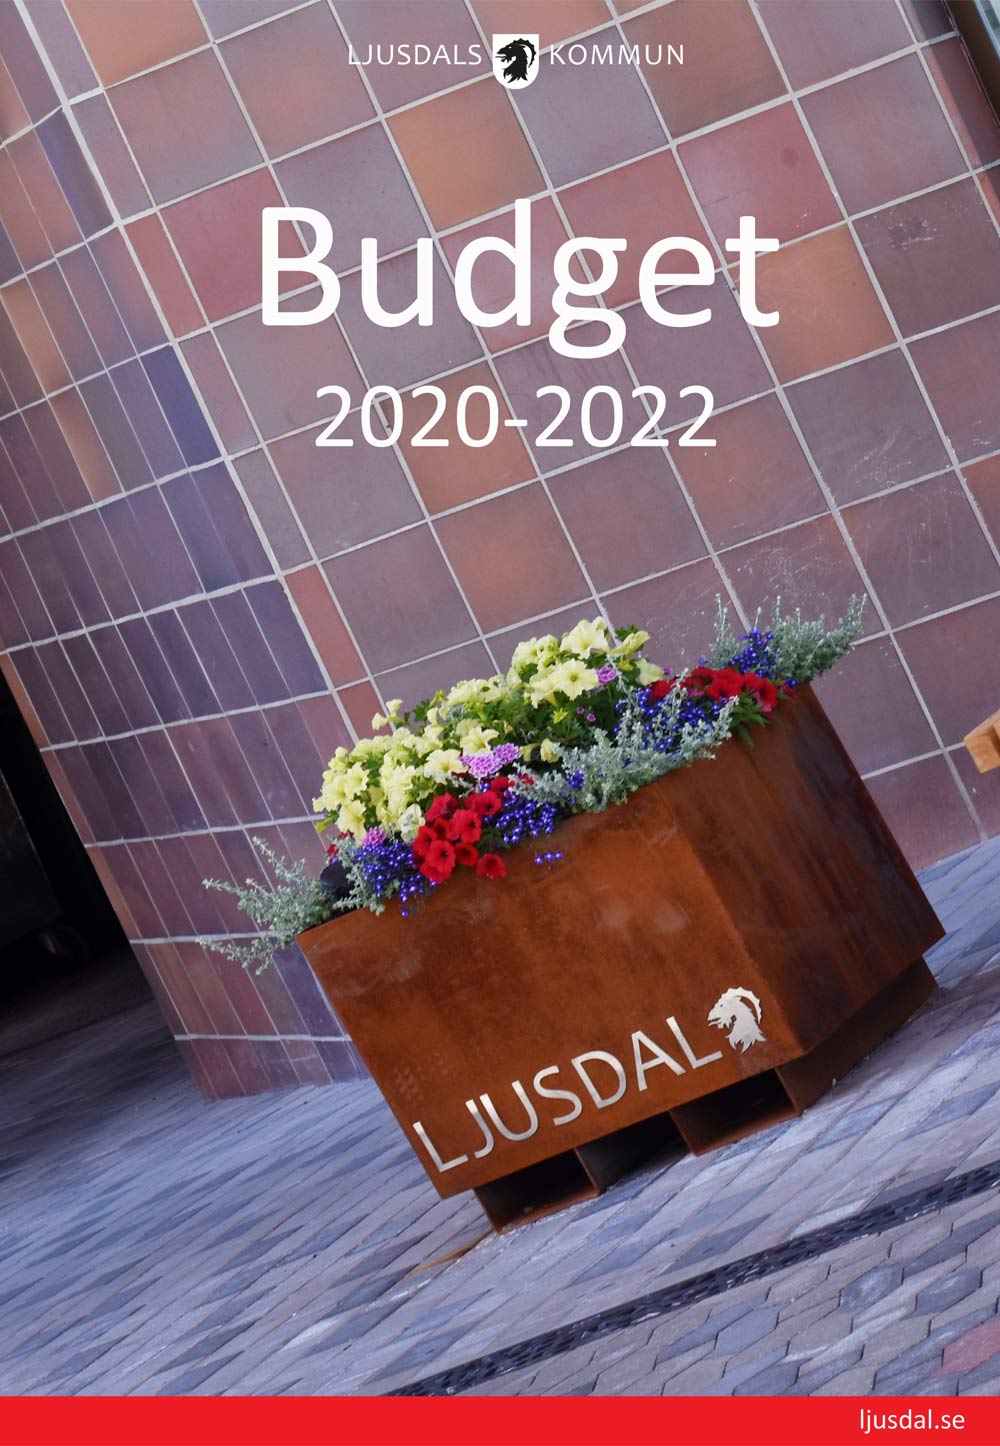 Framsidan på budgetdokumentet